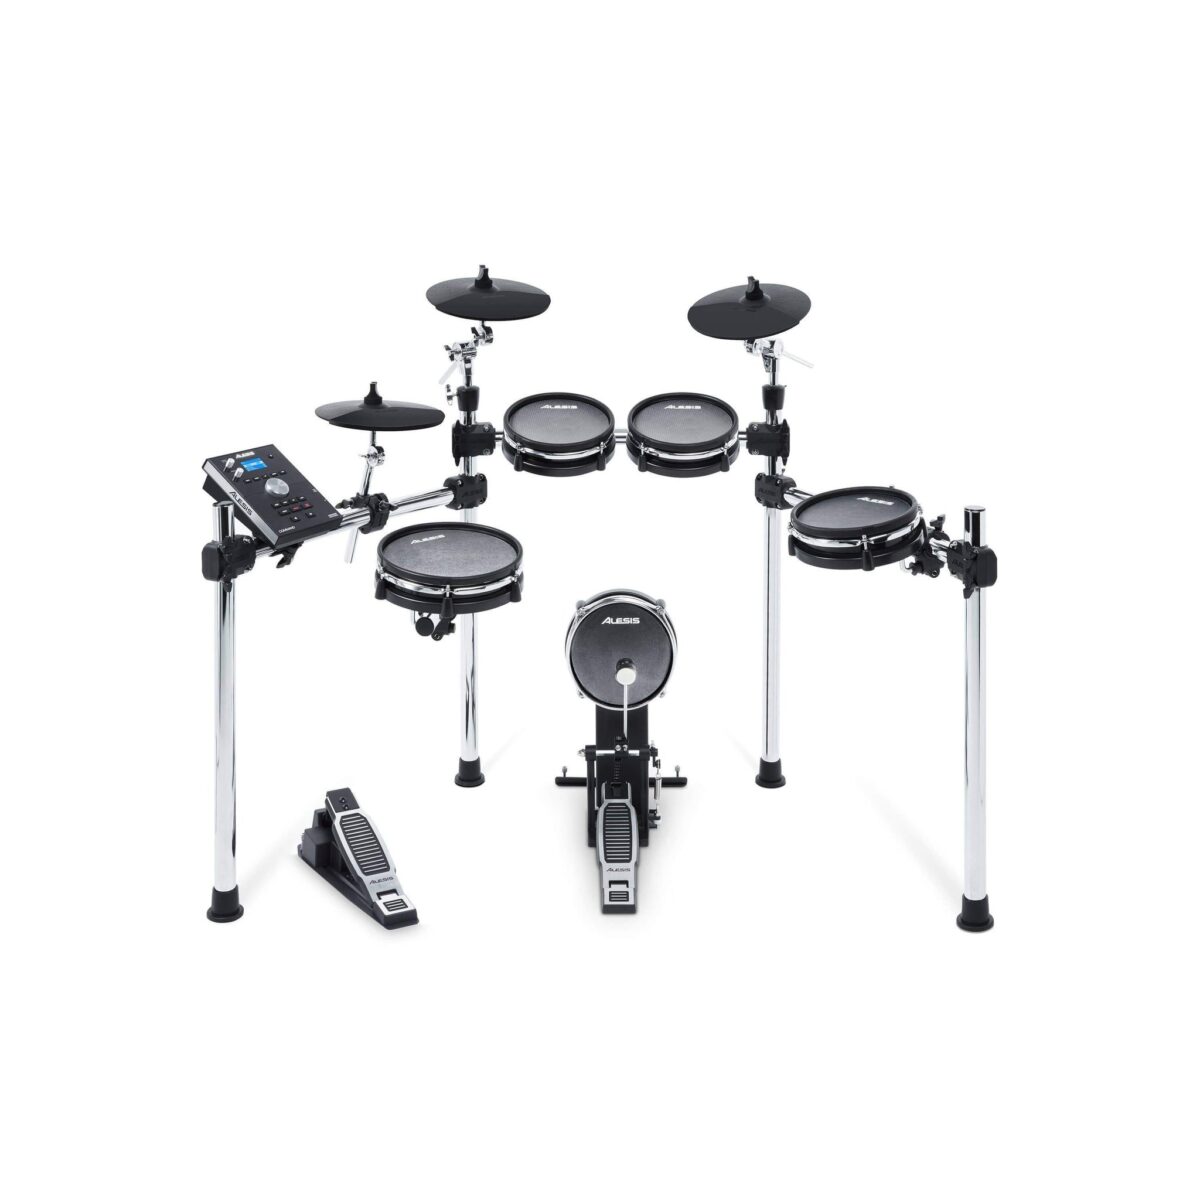 Alesis Surge Mesh Kit 8pc Electronic Drum Kit